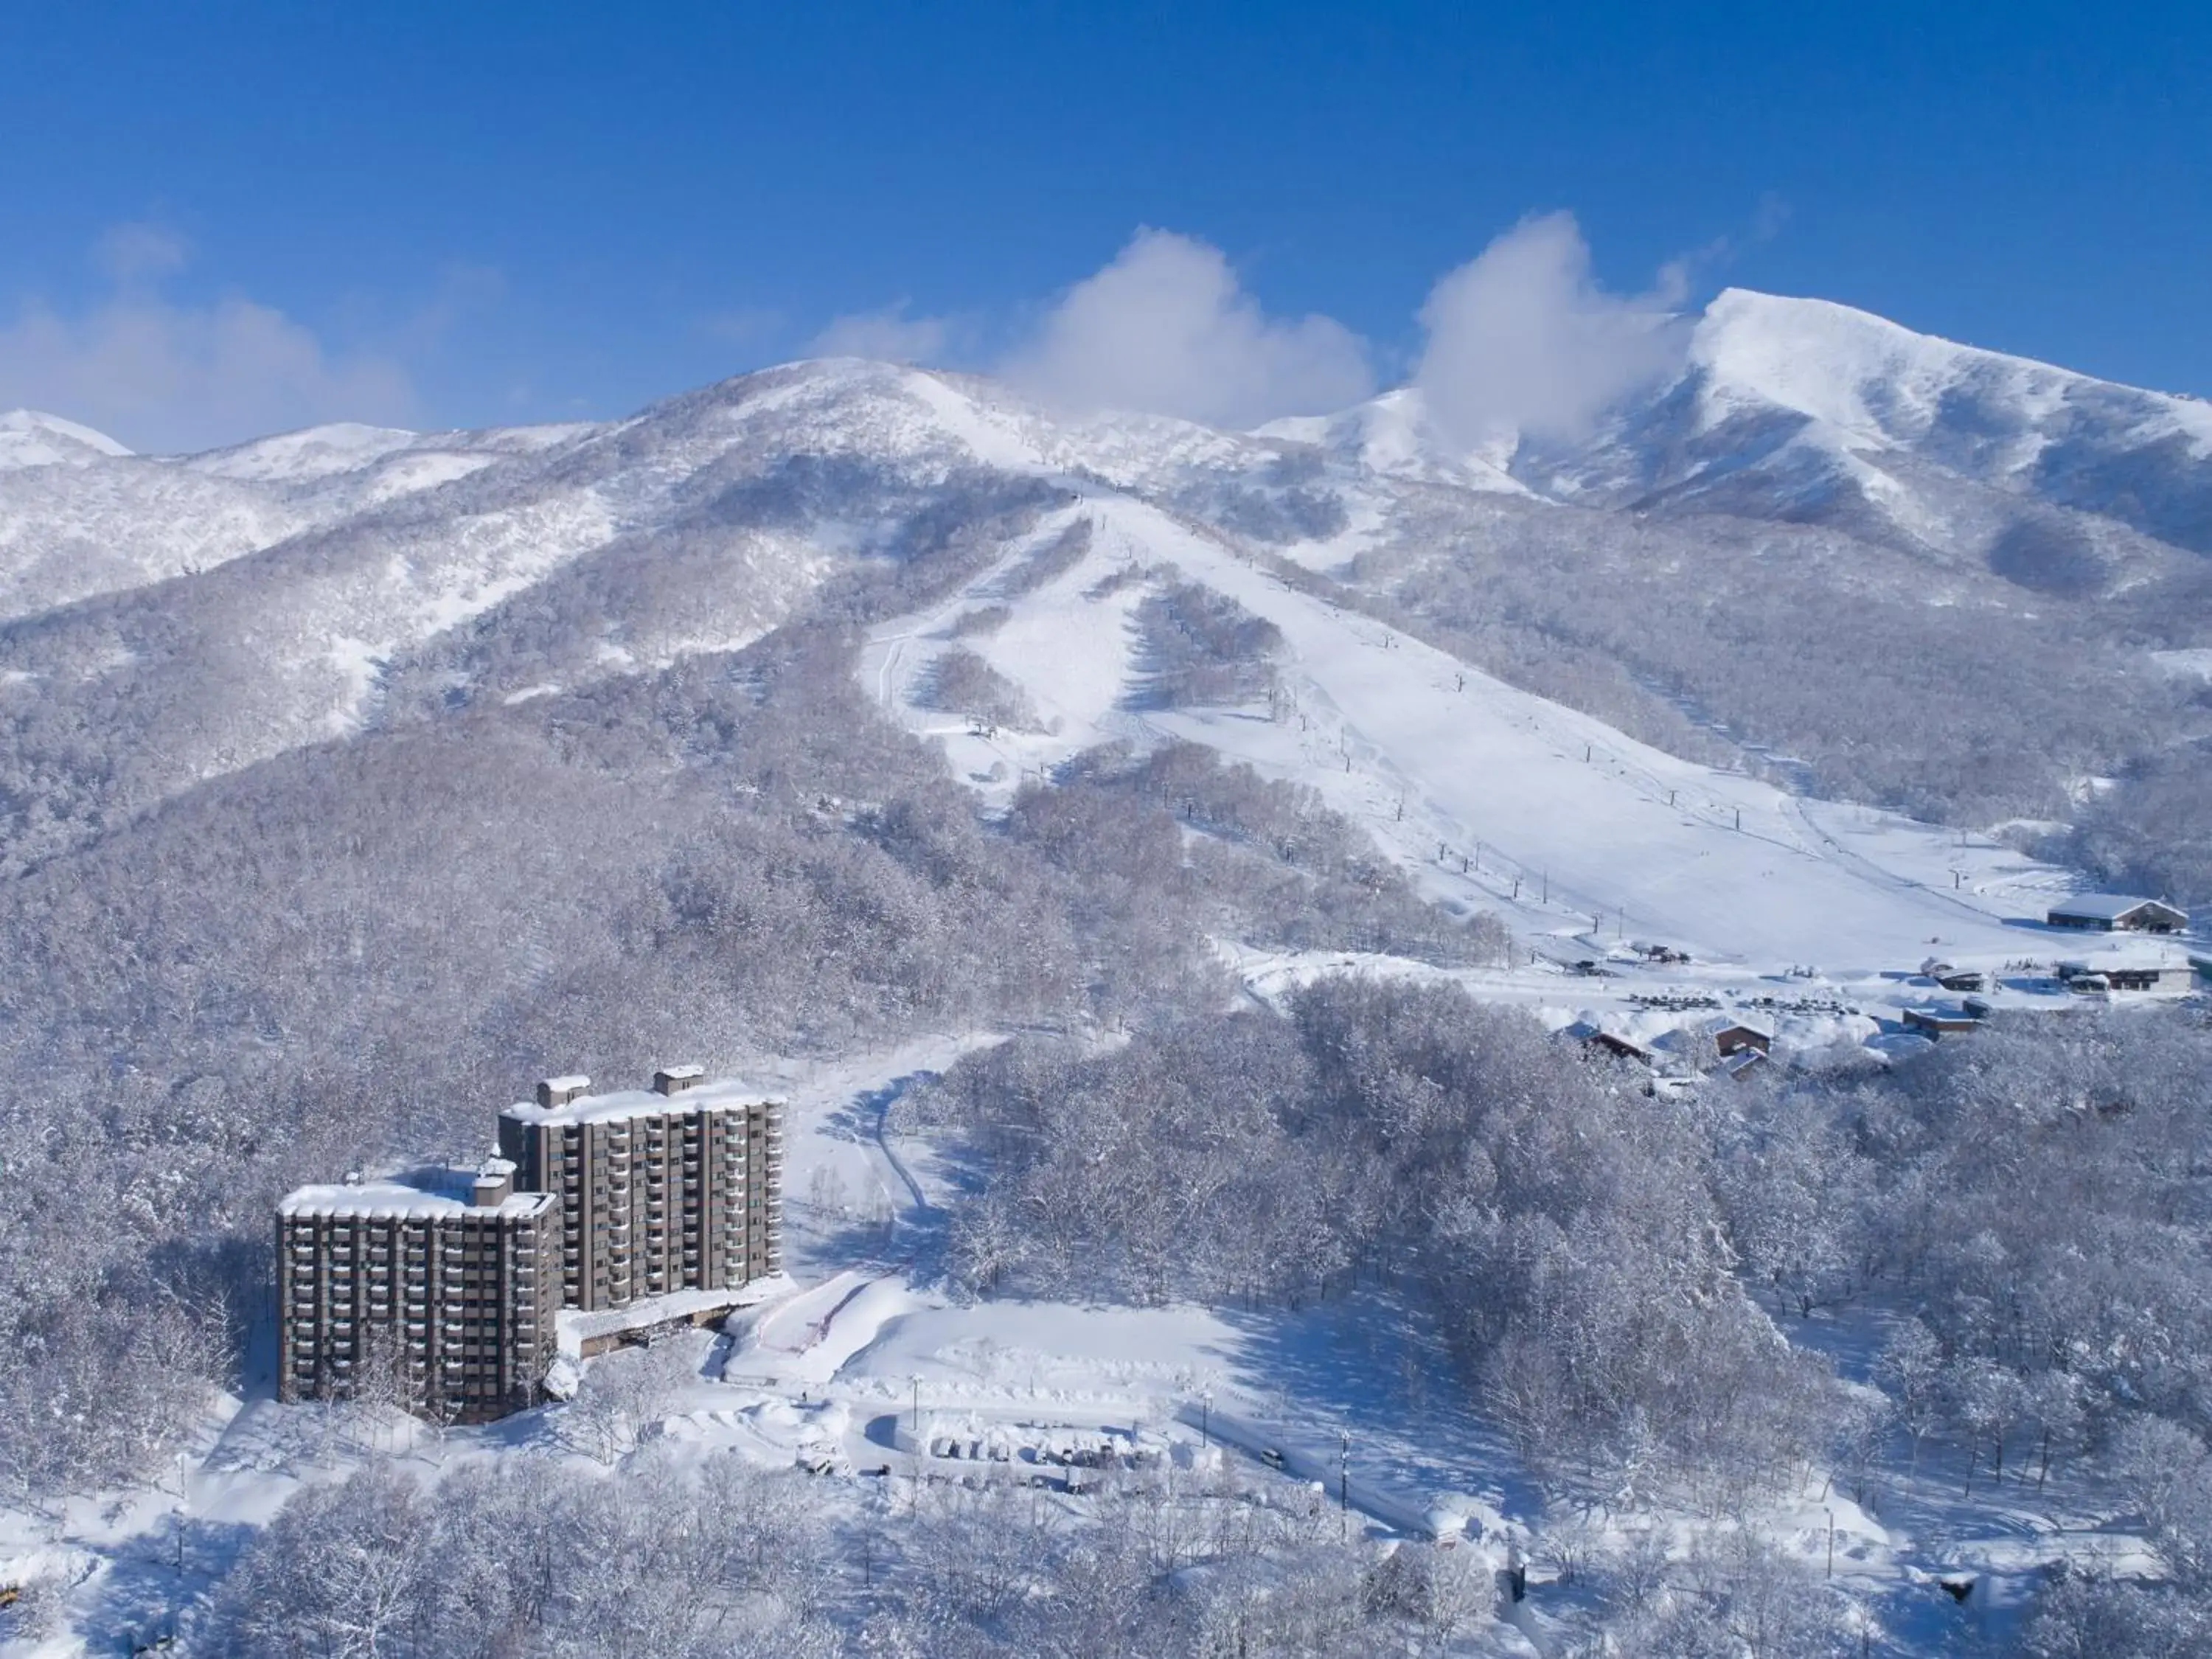 Off site, Winter in One Niseko Resort Towers